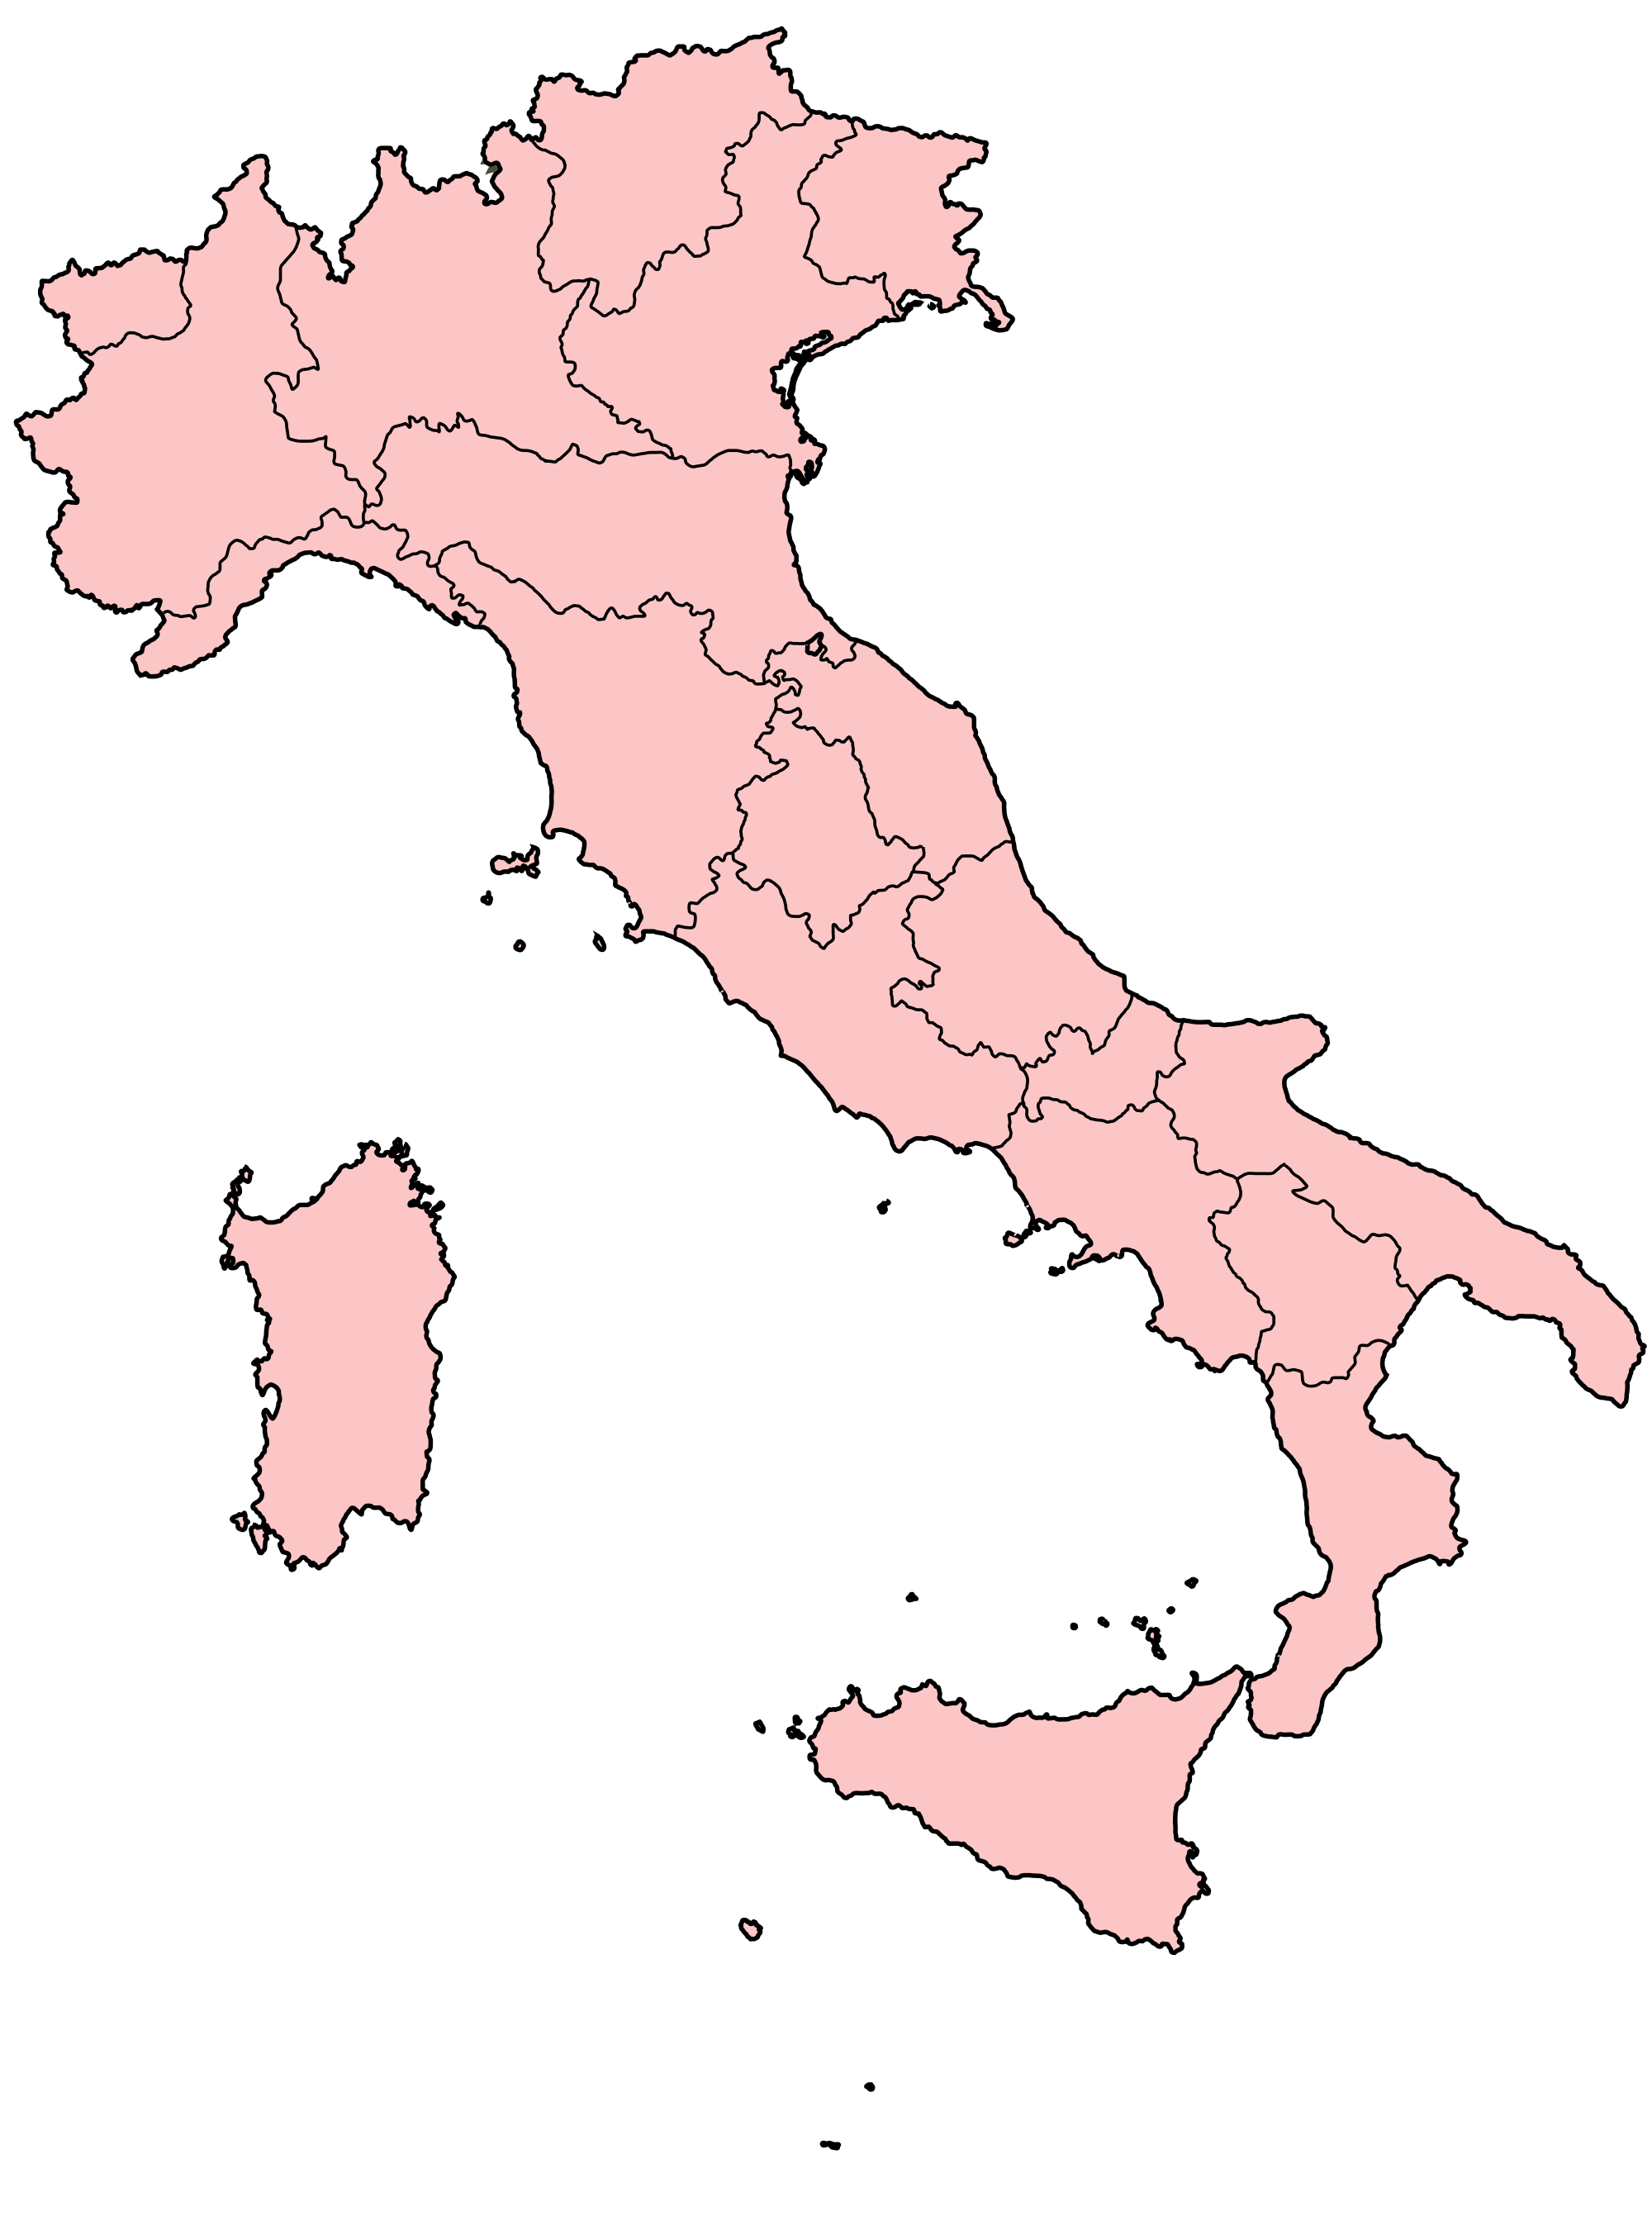 BG: wallpaper Christian Richard, Map Of Italy